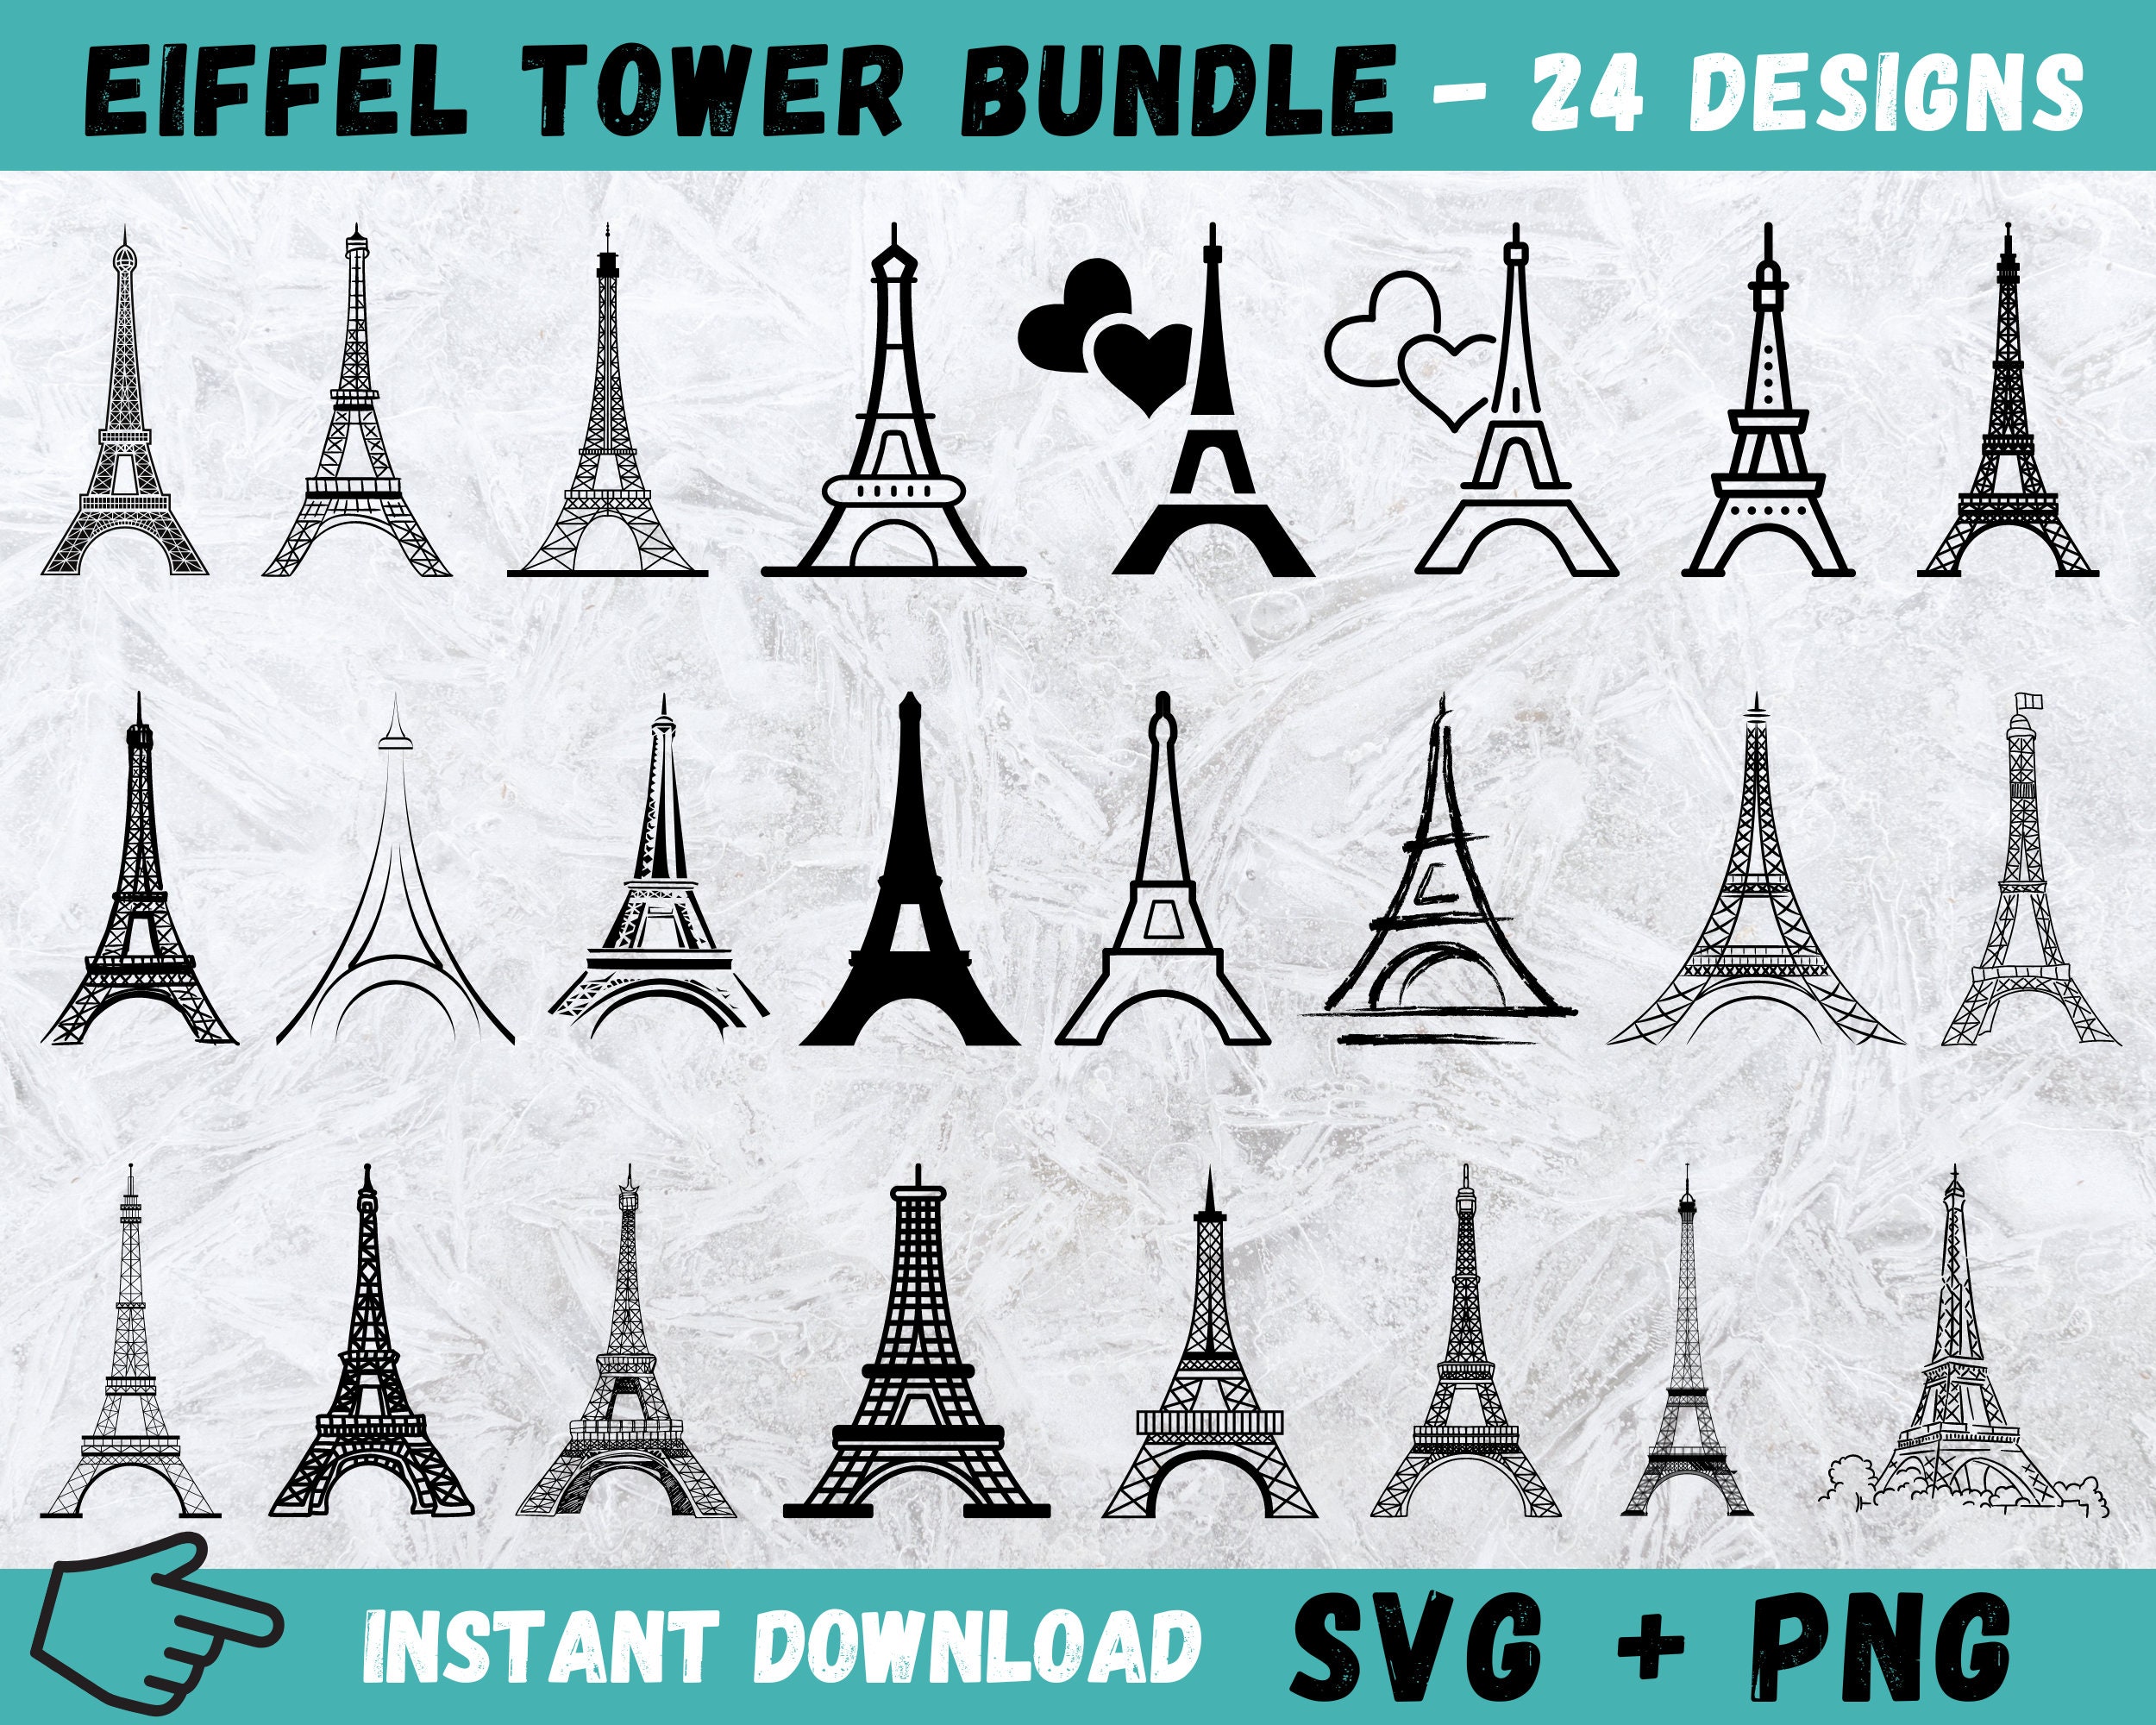 Torre Eiffel PNG, Vectores, PSD, e Clipart Para Descarga Gratuita